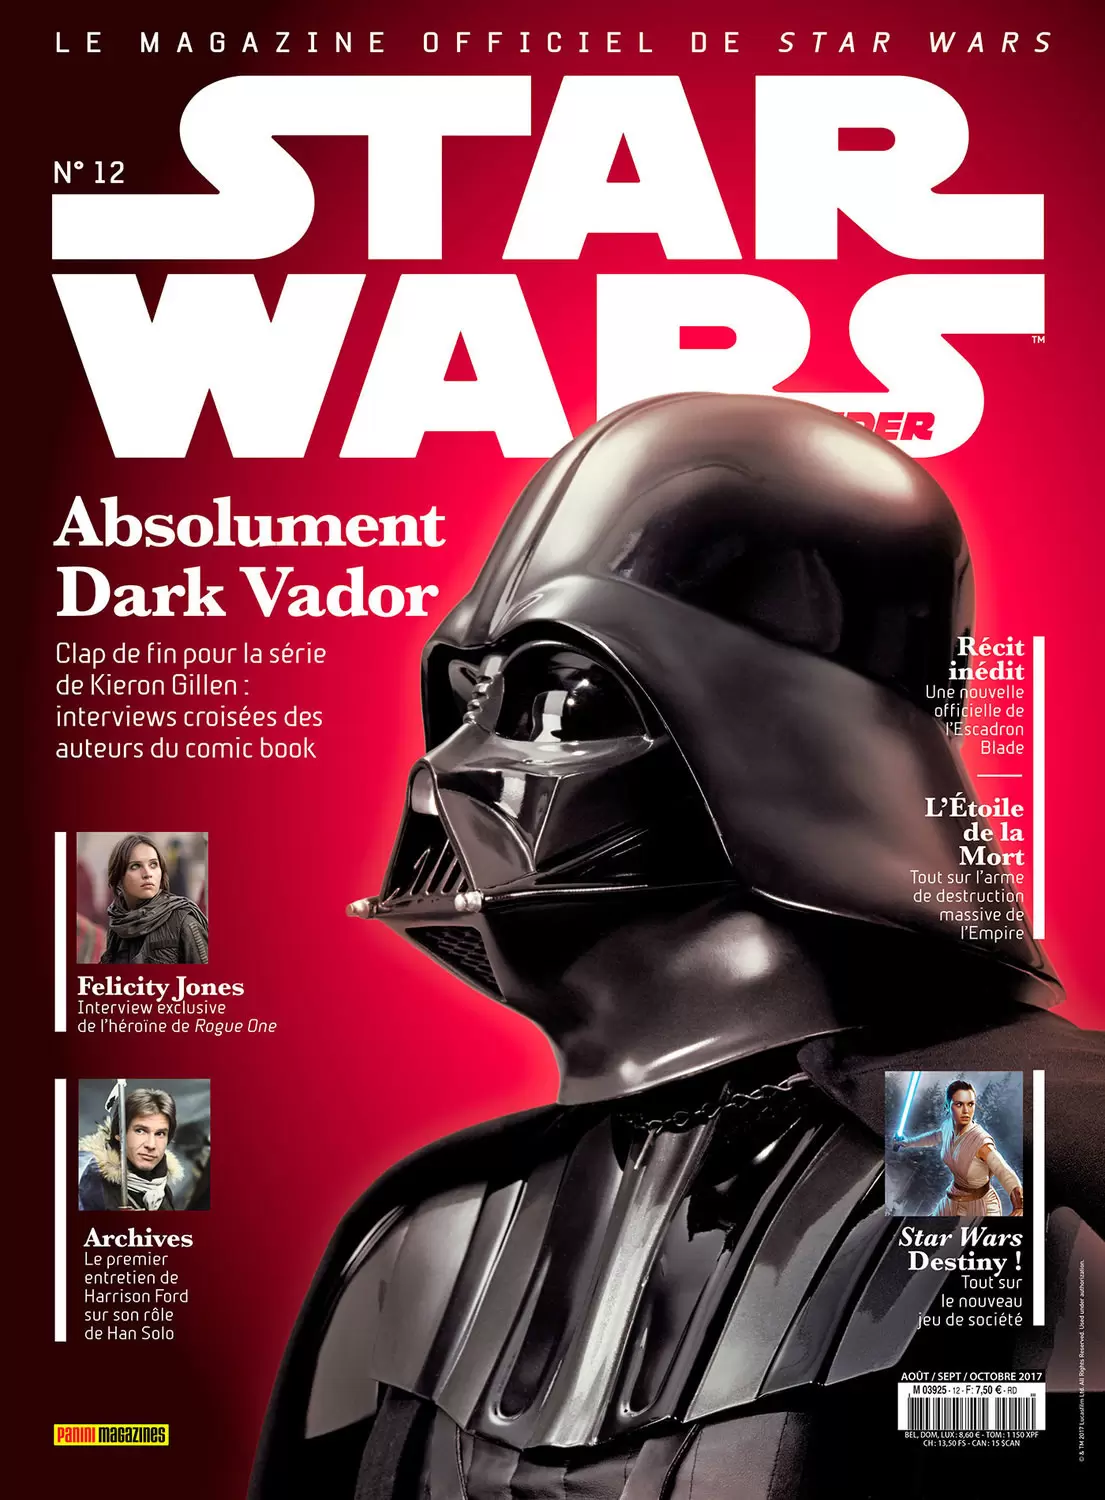 Star Wars Insider - Absolument Dark Vador